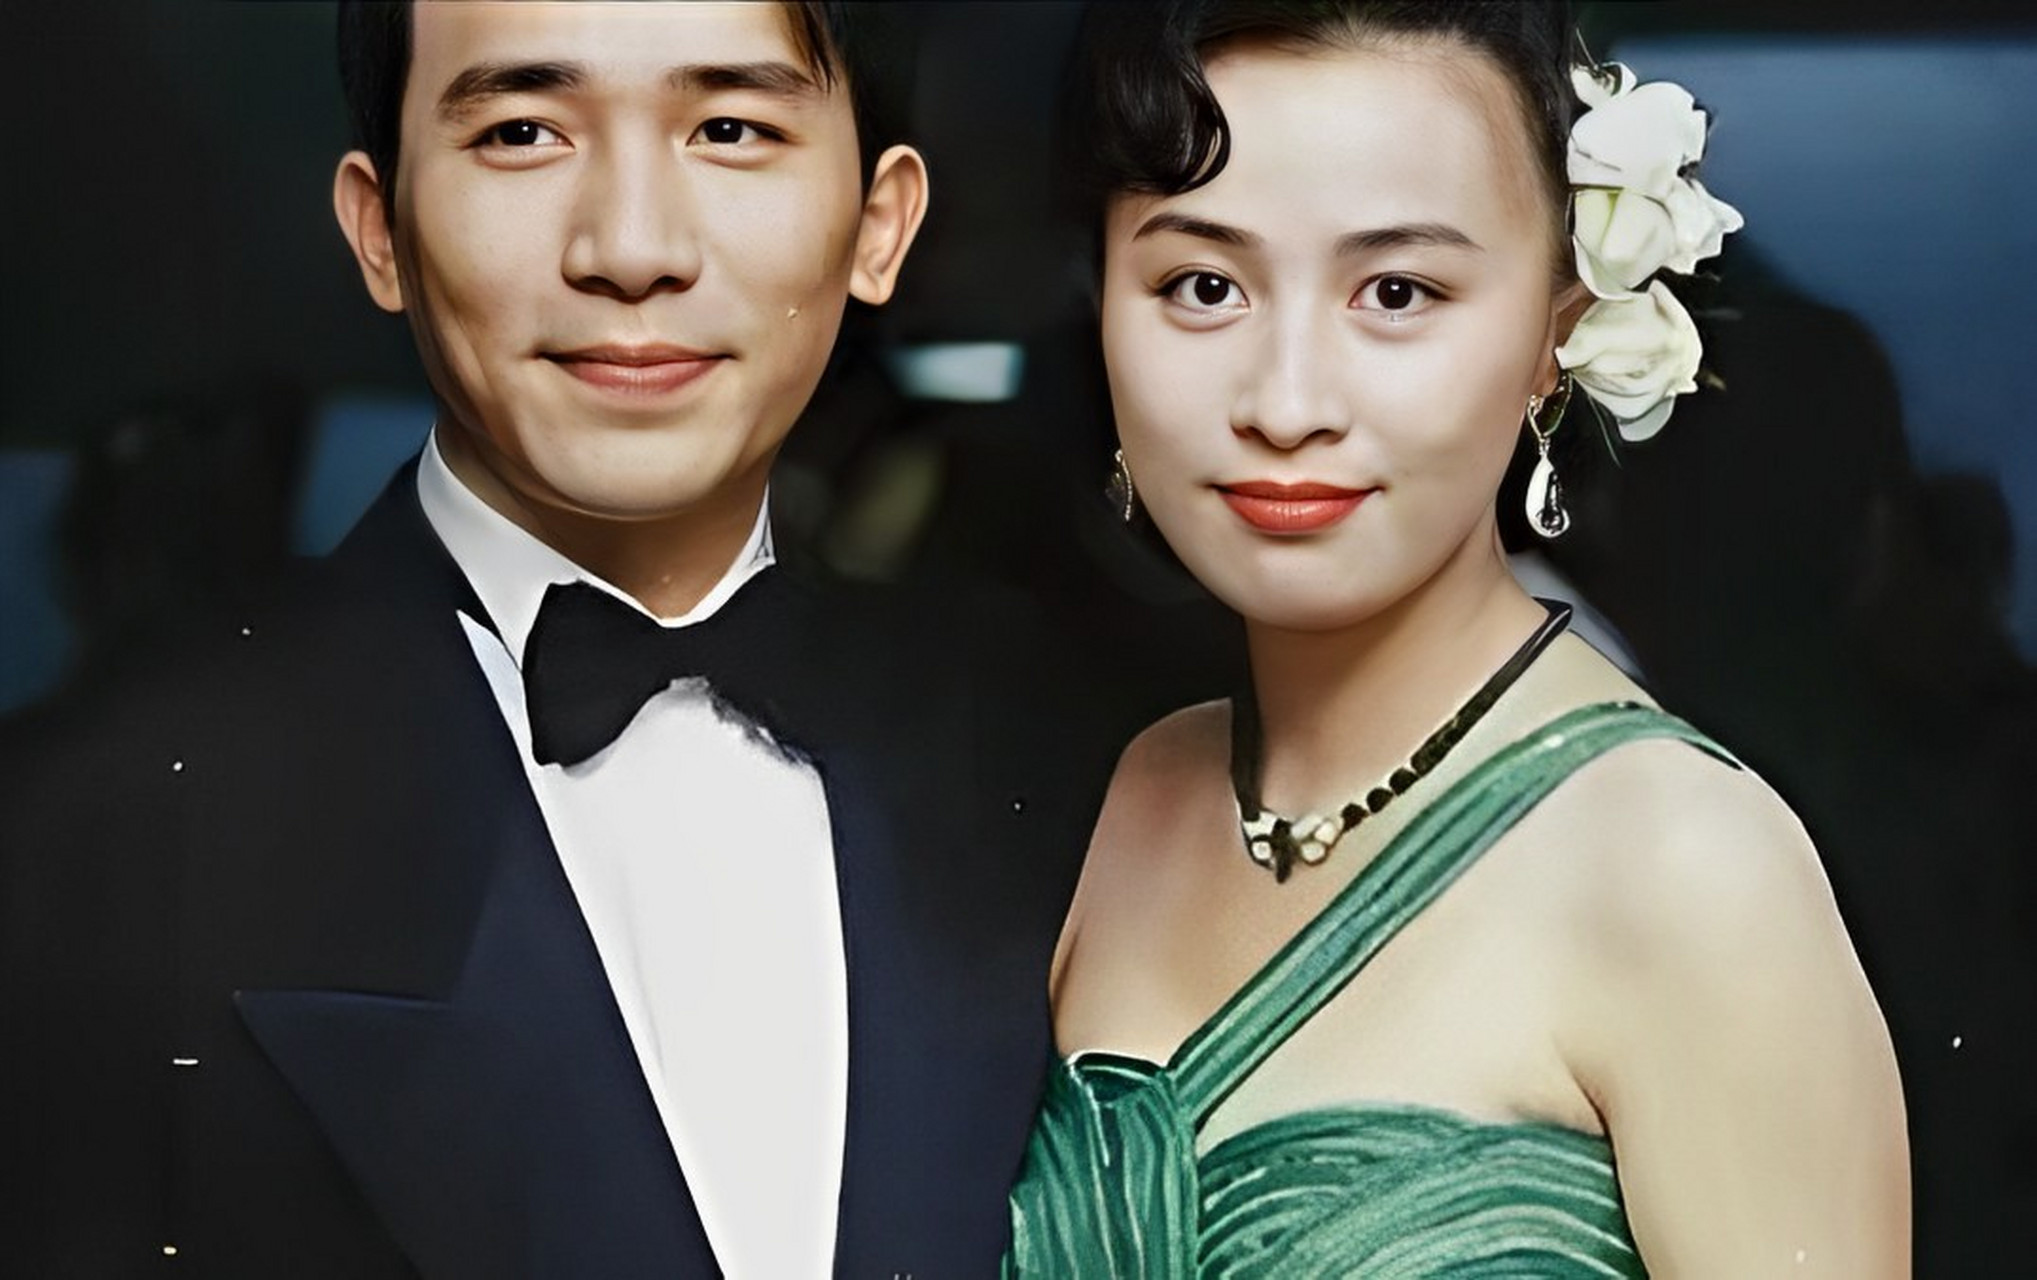 梁朝伟和刘嘉玲的旧照是真的很养眼,那个时候各自都很青涩,仔细一看